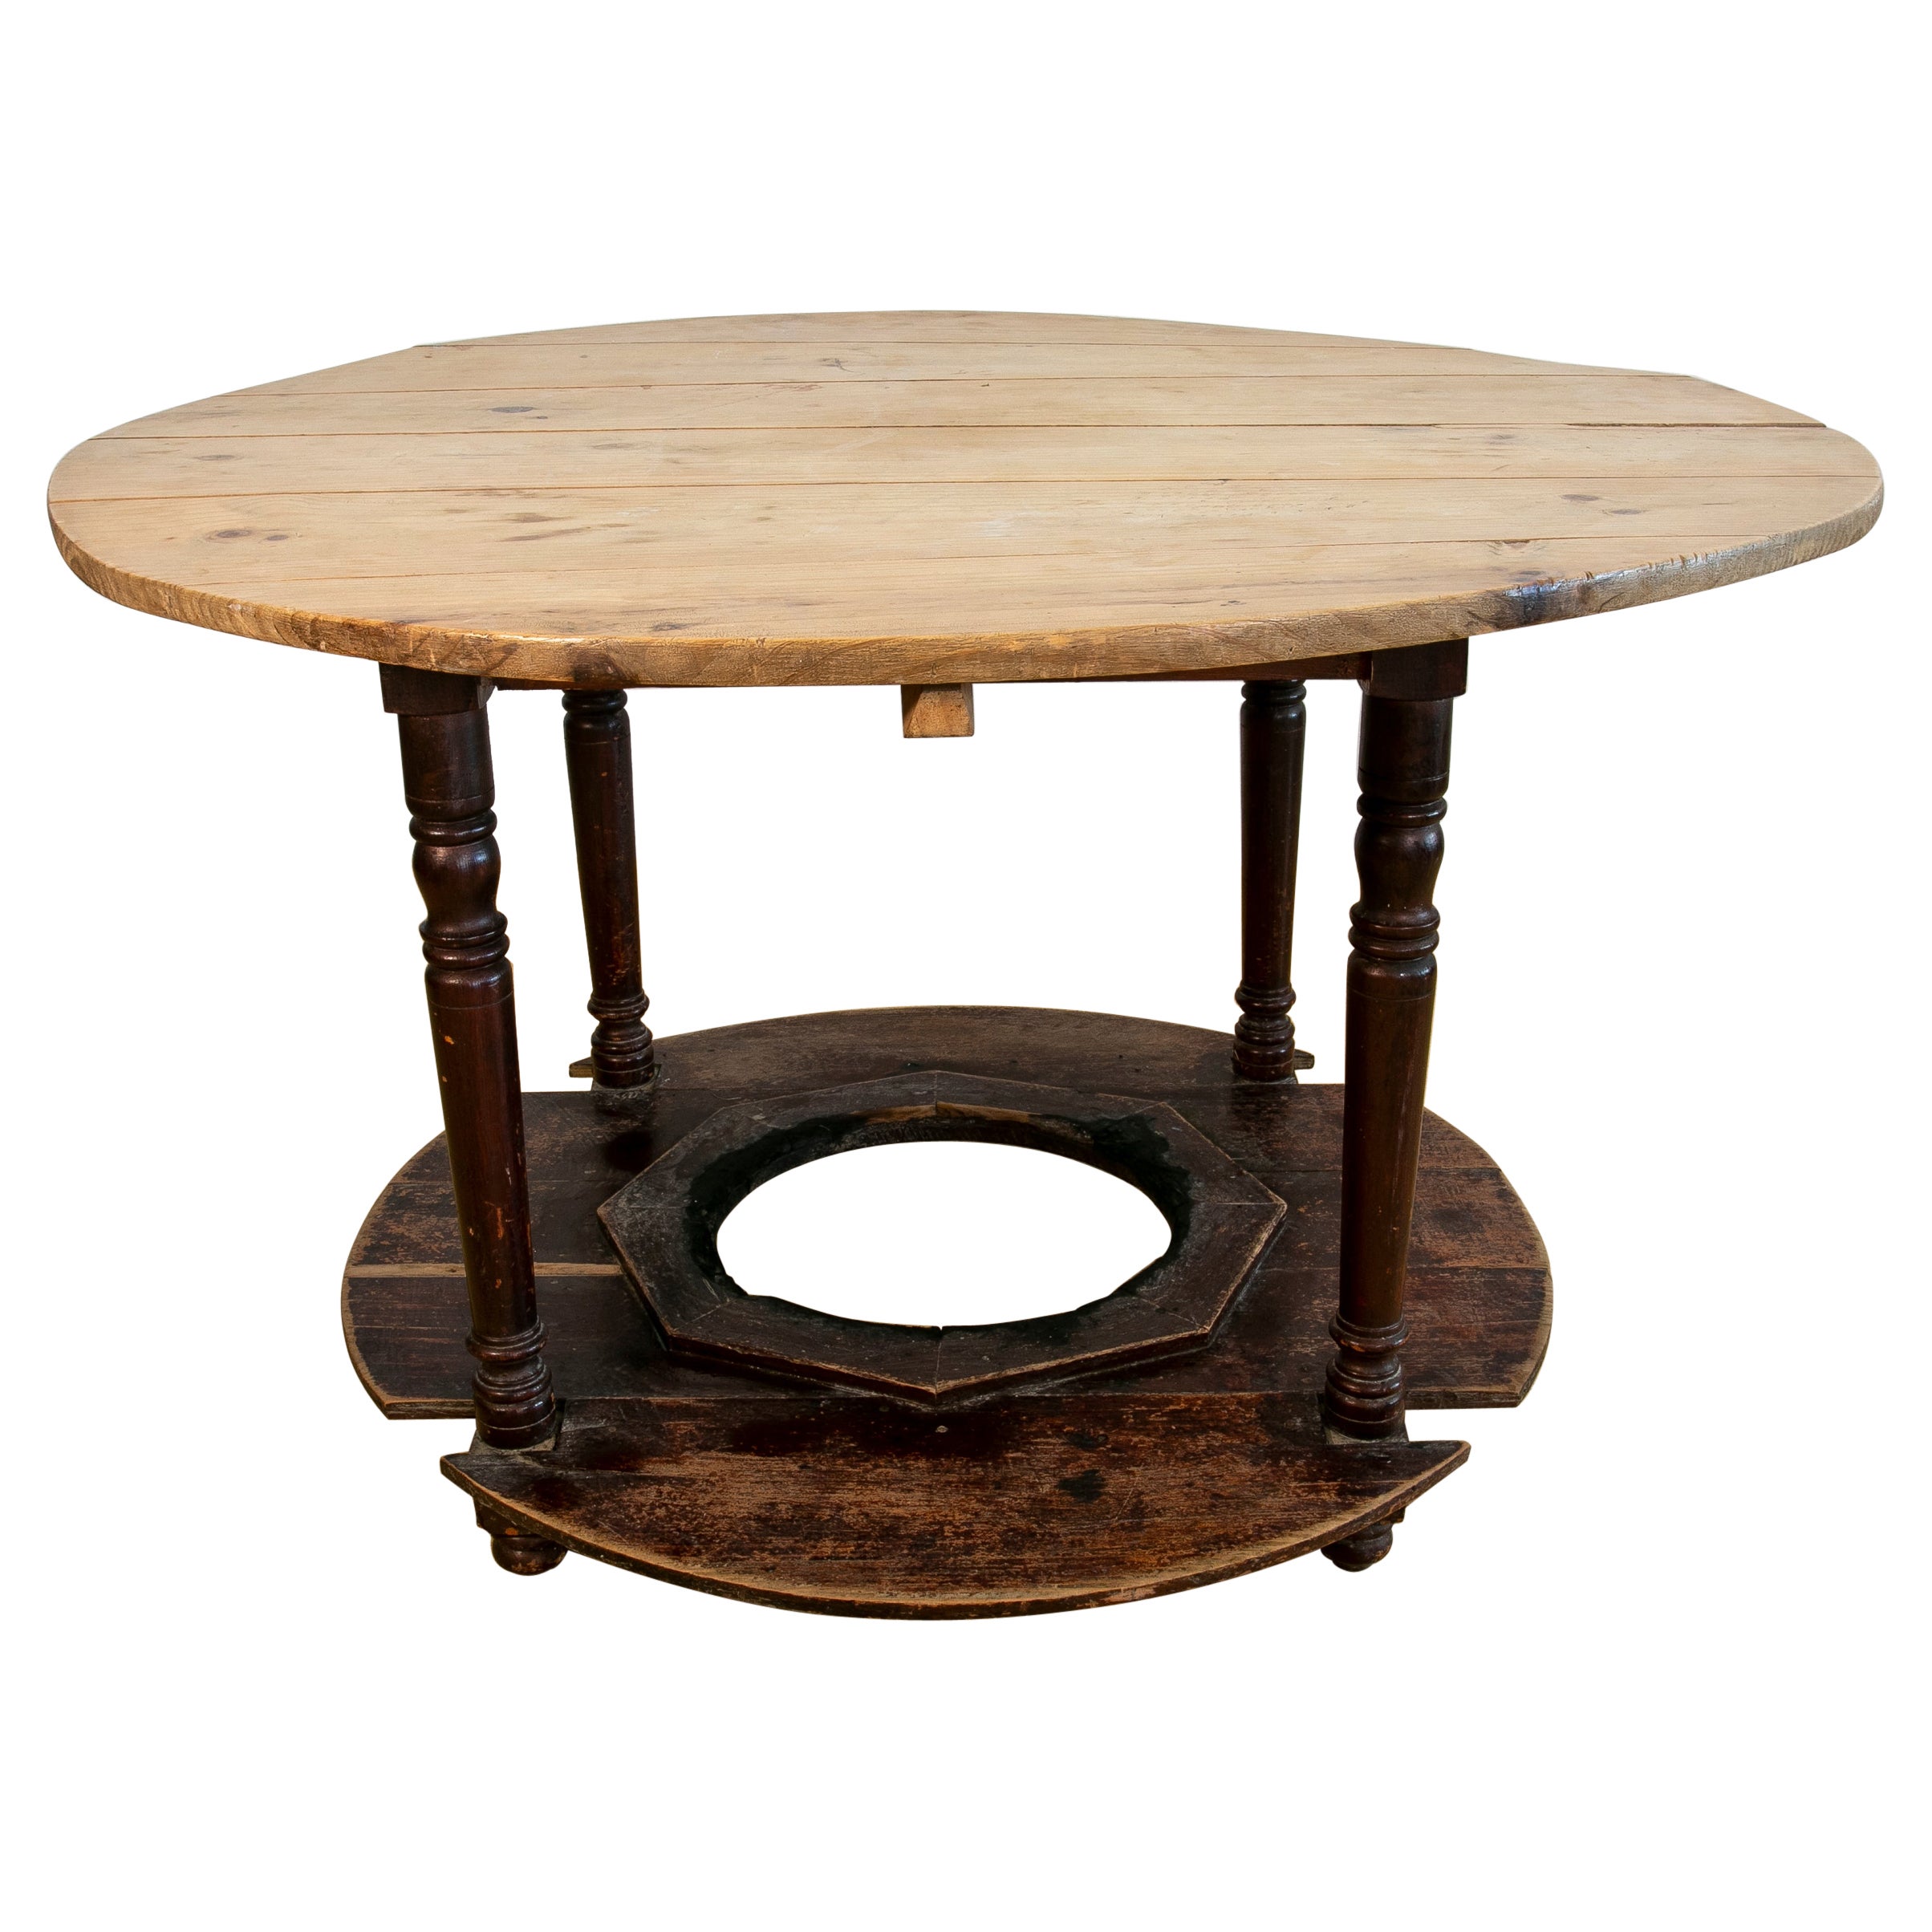 Spanischer typischer runder Holztisch zum Platzieren von Bügel, Spanisch